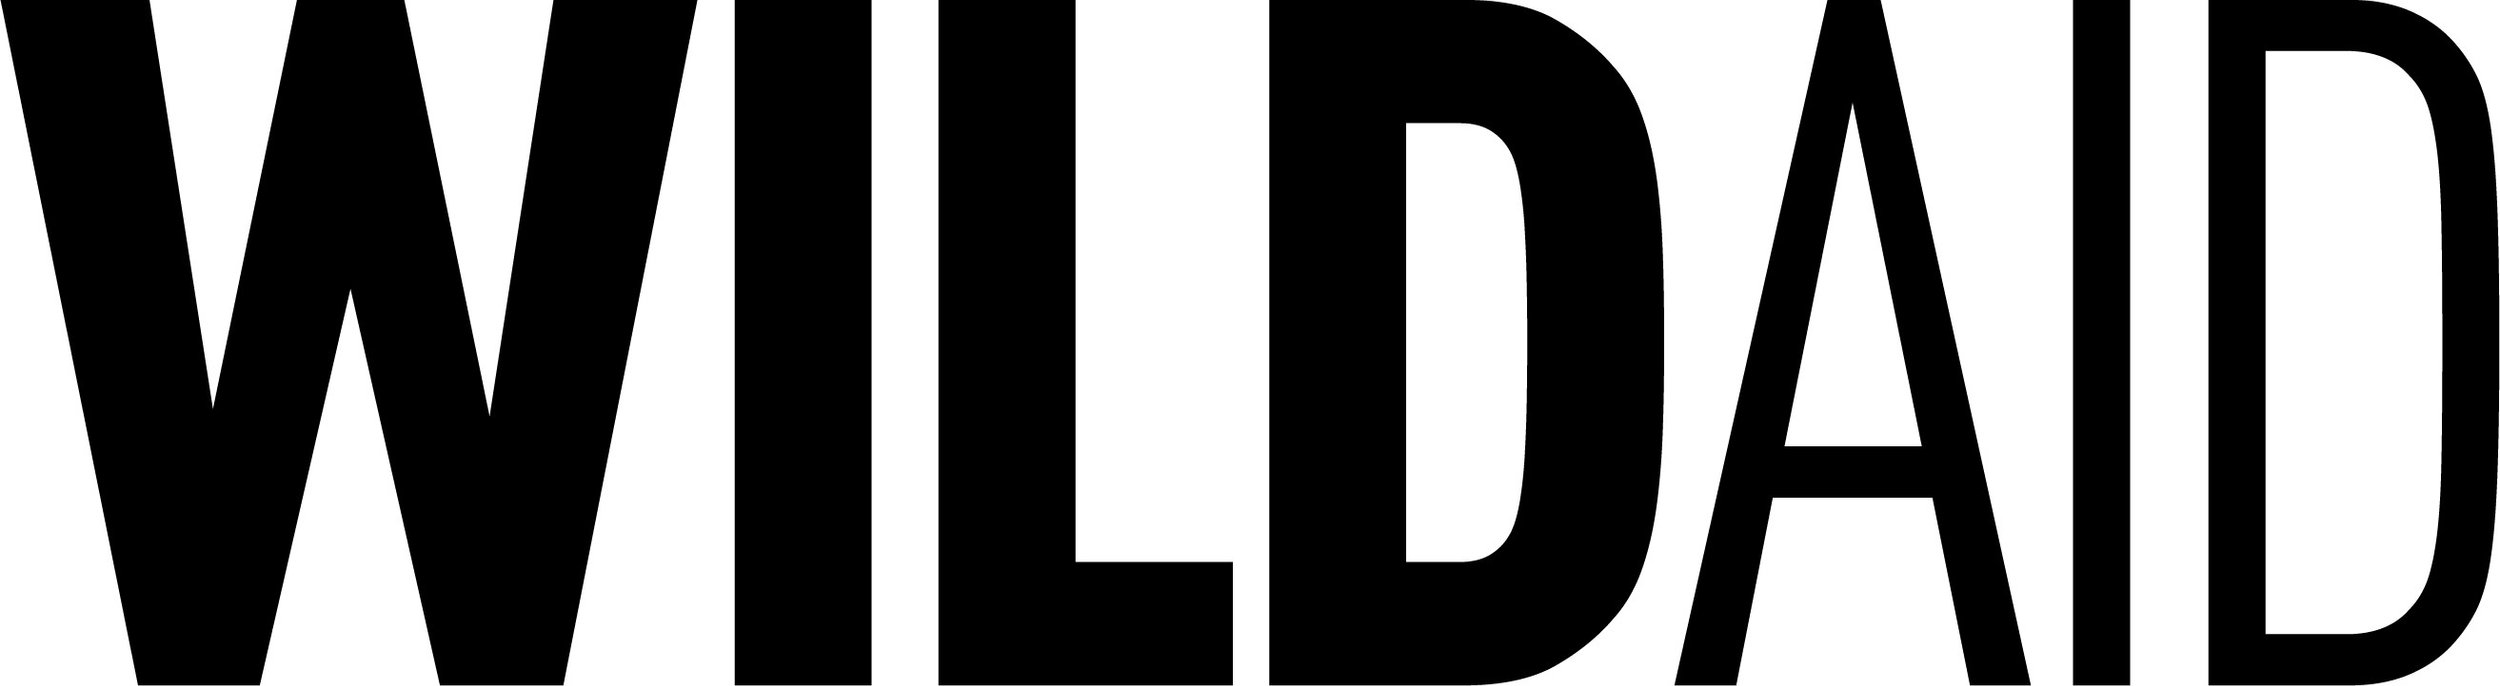 WildAid-Logo.jpeg